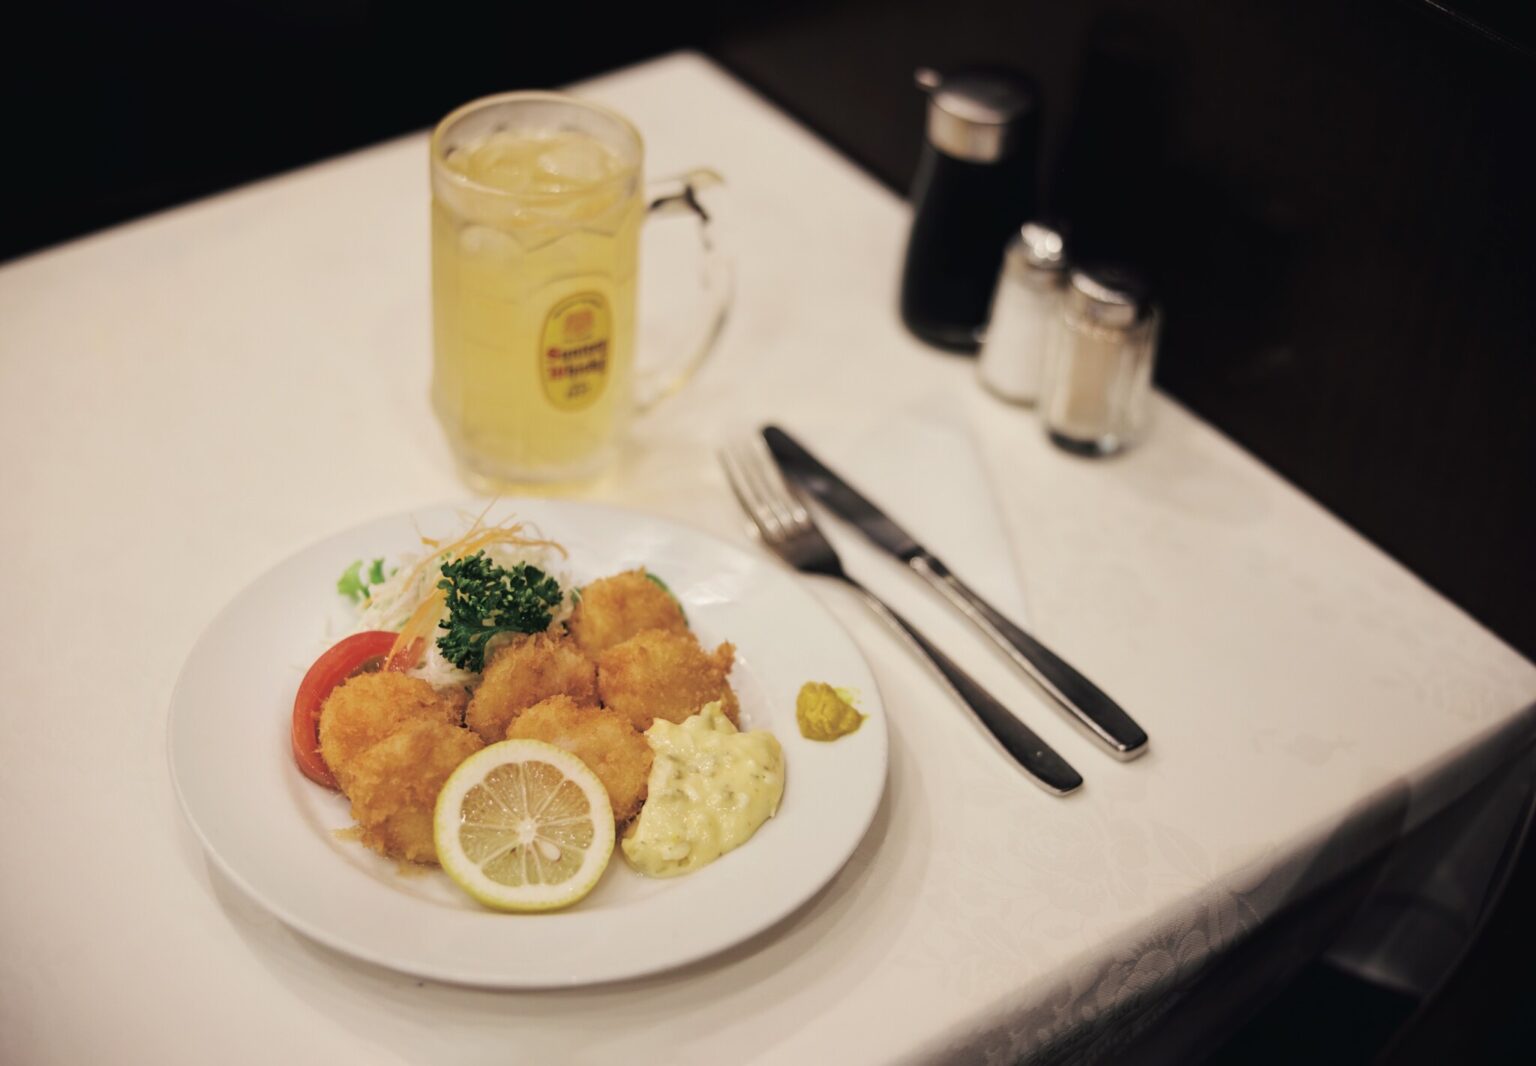 大銀座のおいしい洋食をめざして、料理取材経験が豊富な、Pさんこと渡辺紀子さんの指南を仰ぐことに。連れていかれたのは、日本橋のど真ん中にある、小さな佇まいのお店〈レストラン桂〉だった。